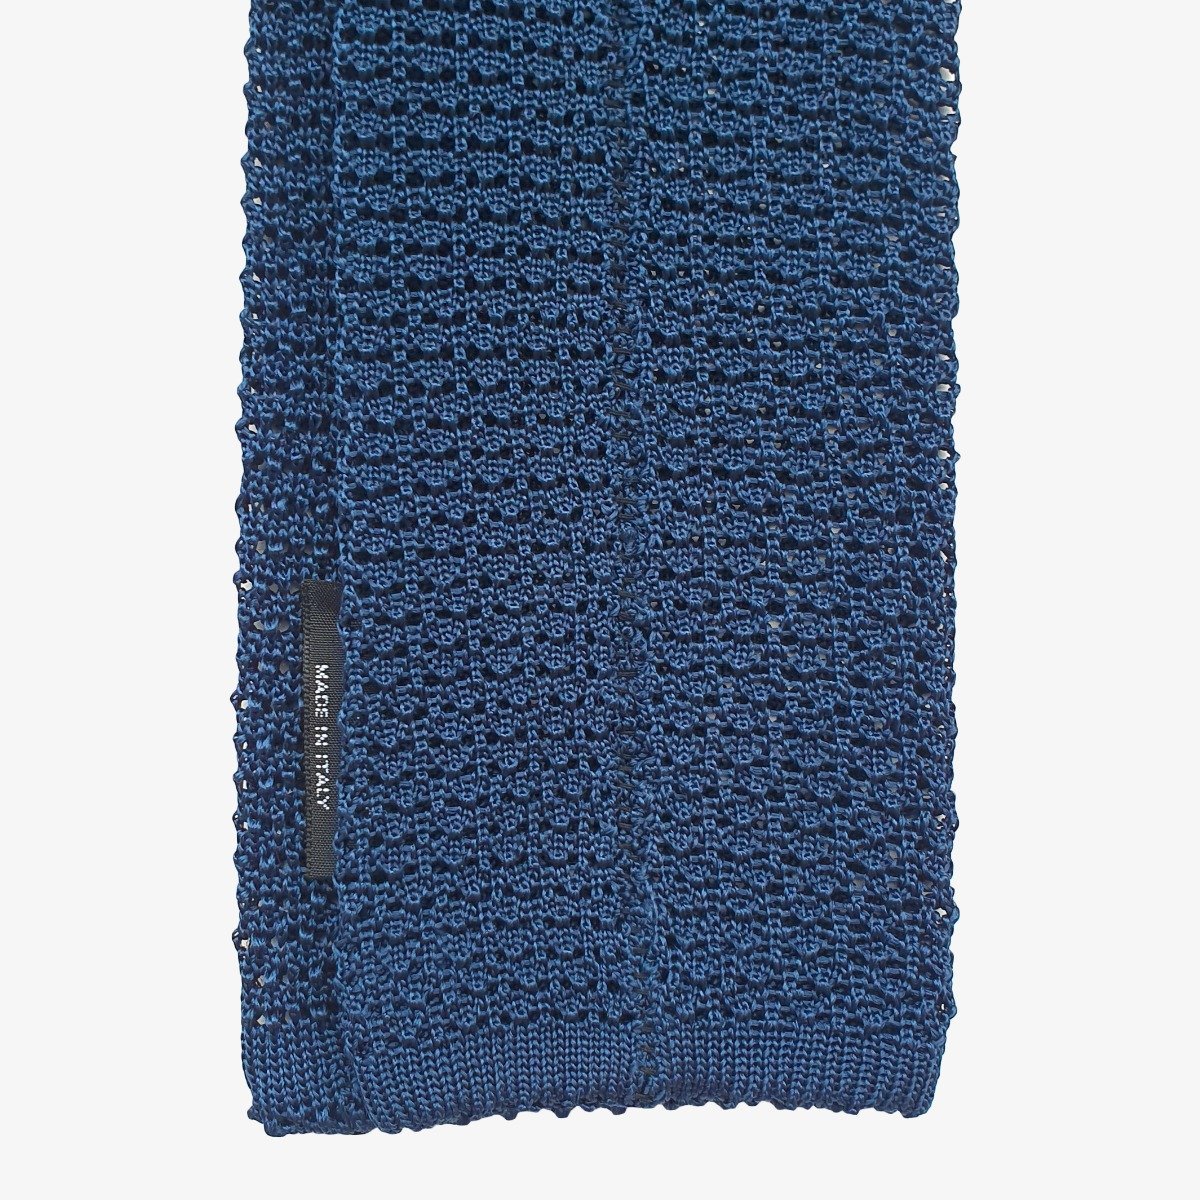 Serà Fine Silk navy blue knitted silk tie